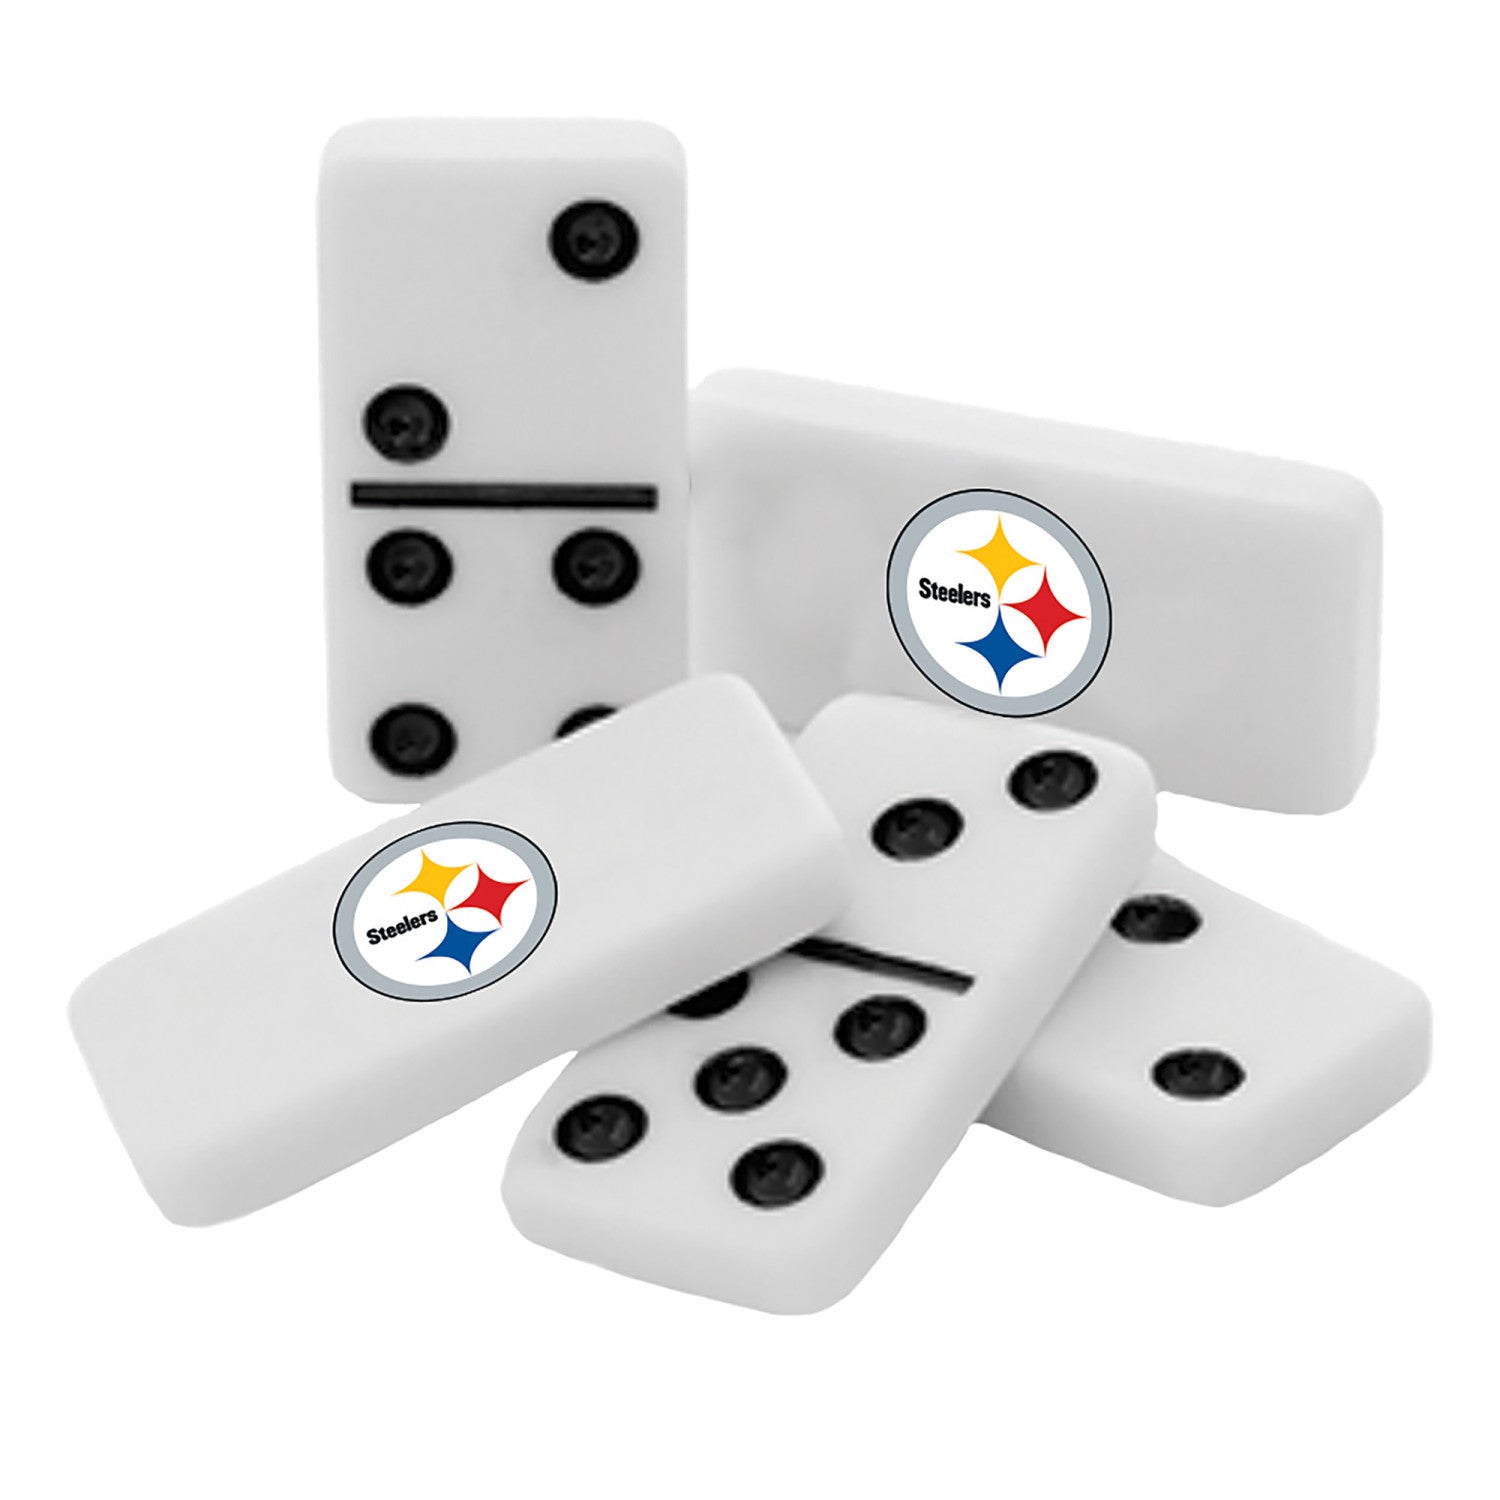 Pittsburgh Steelers Dominoes